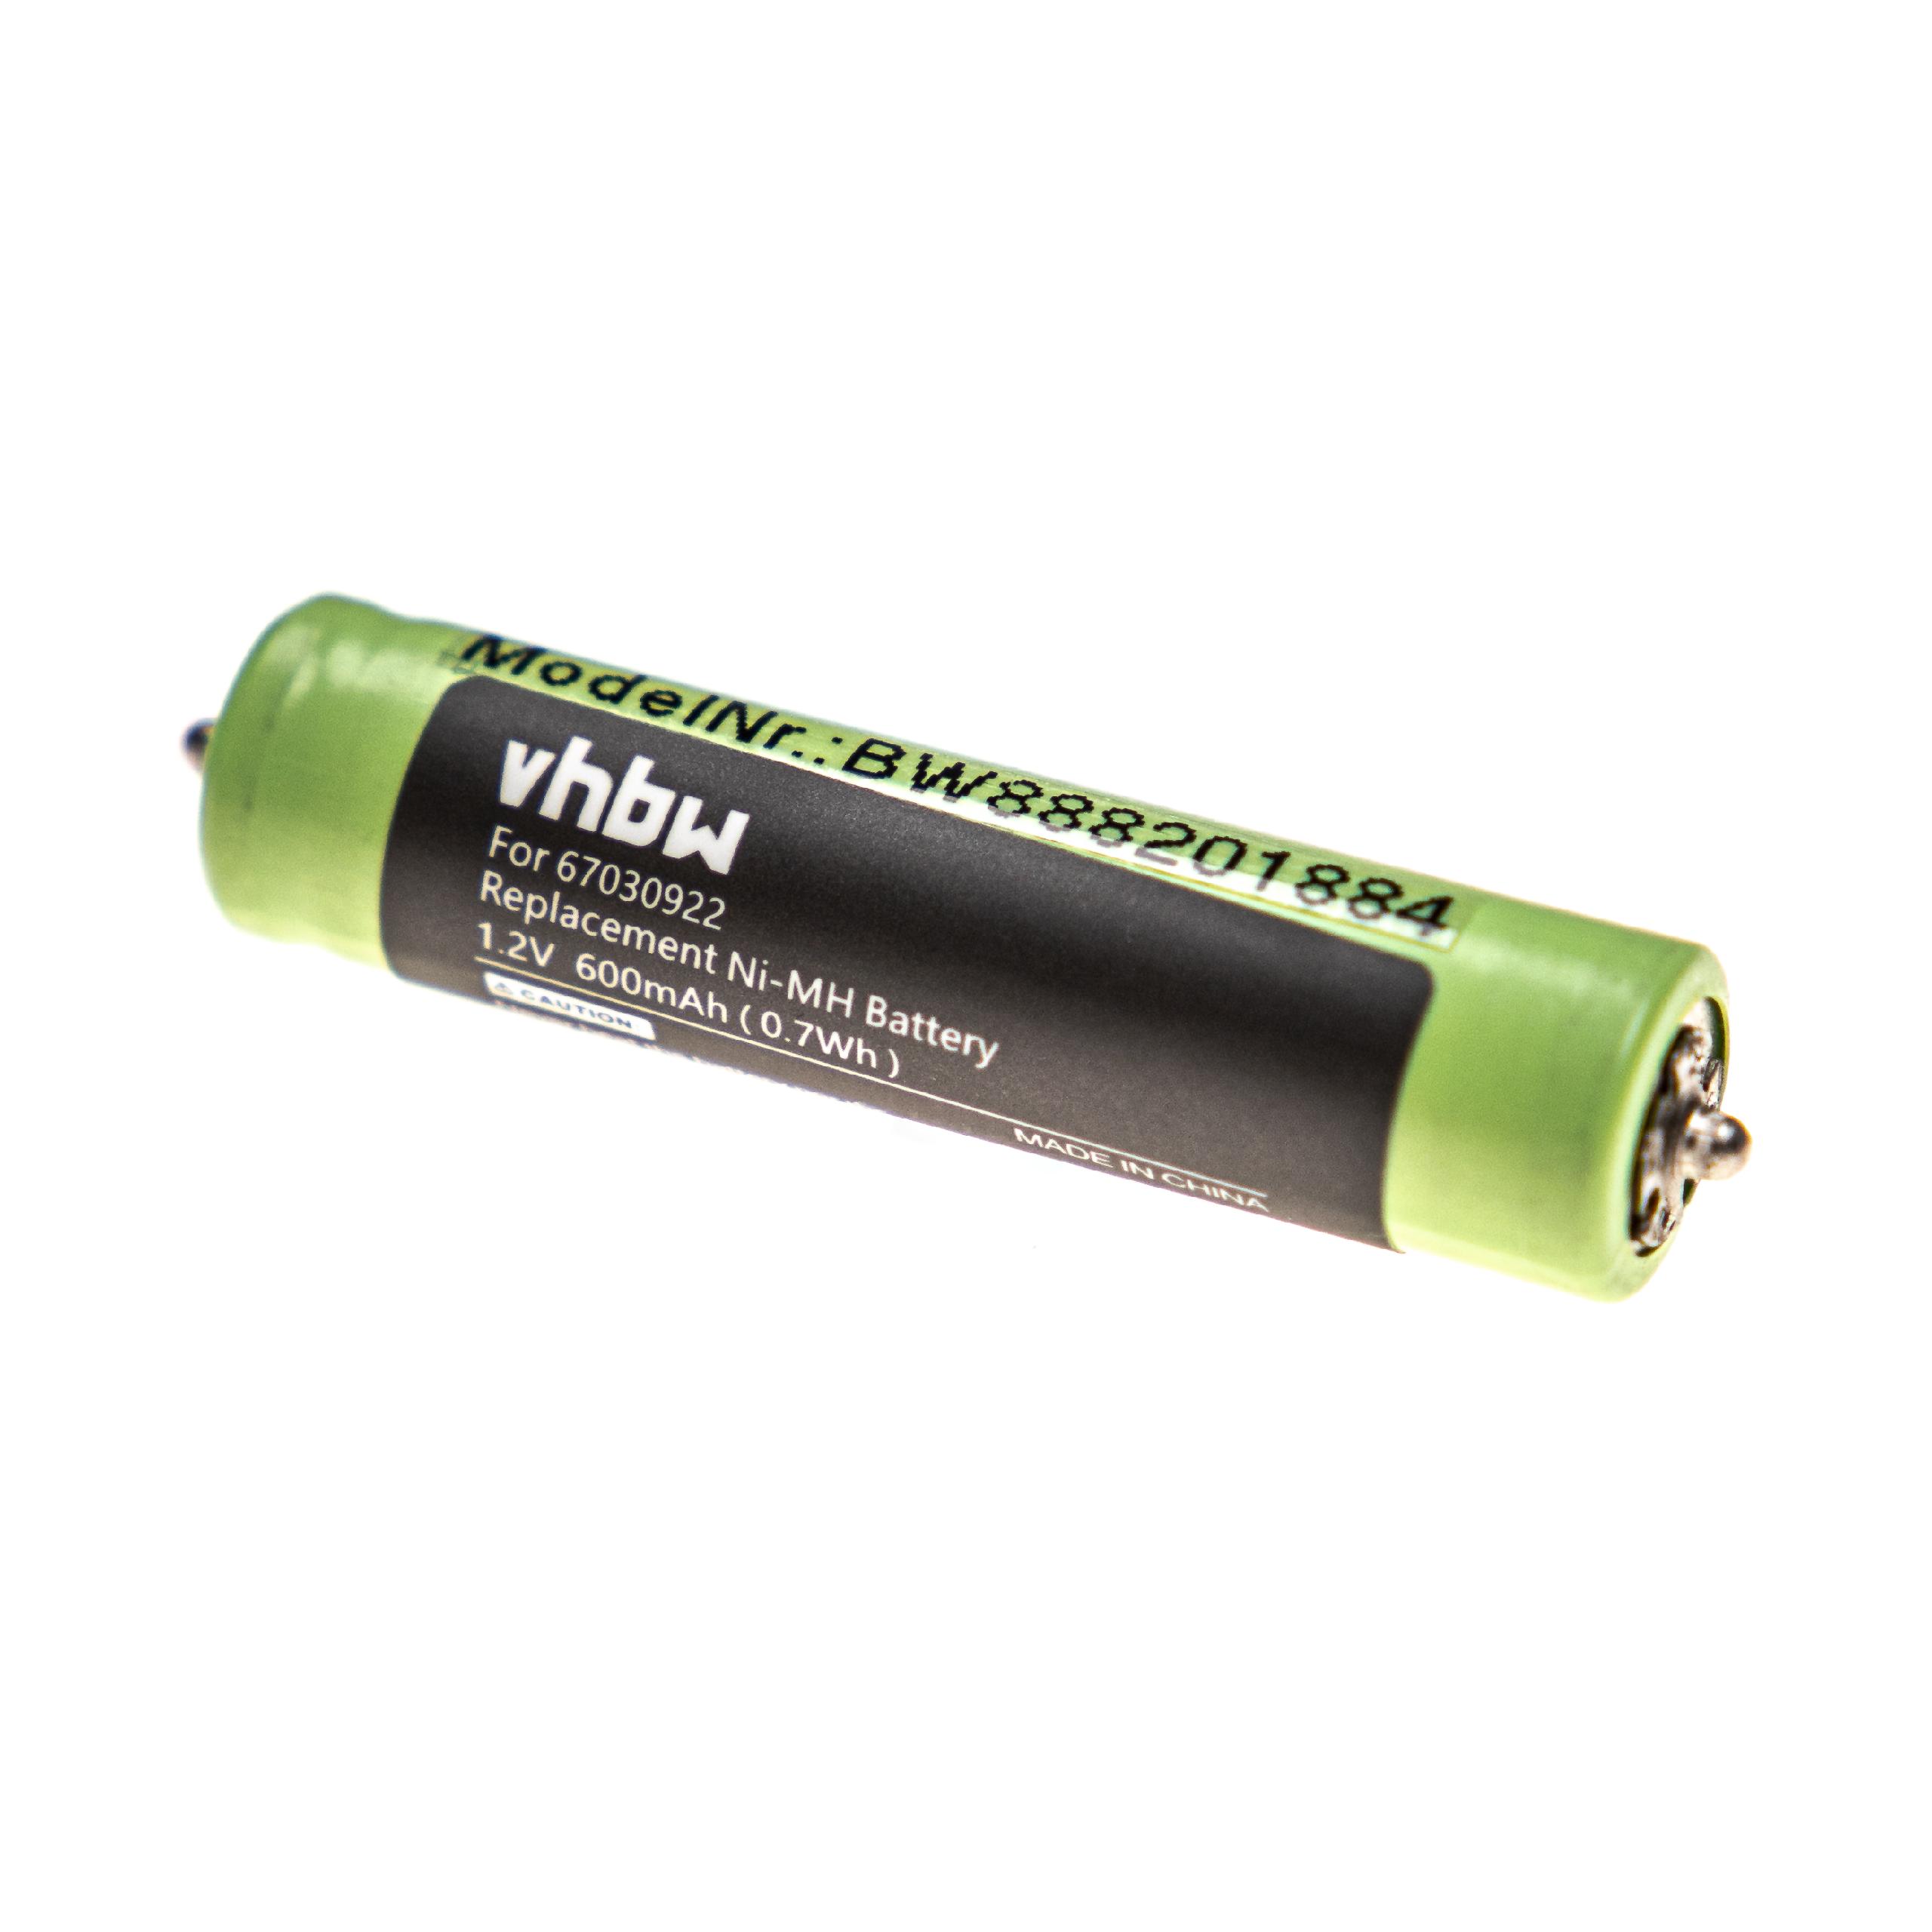 Batteries (2x pièces) remplace Braun 7030922, 67030922, 1HR-4UC pour rasoir électrique - 600mAh 1,2V NiMH